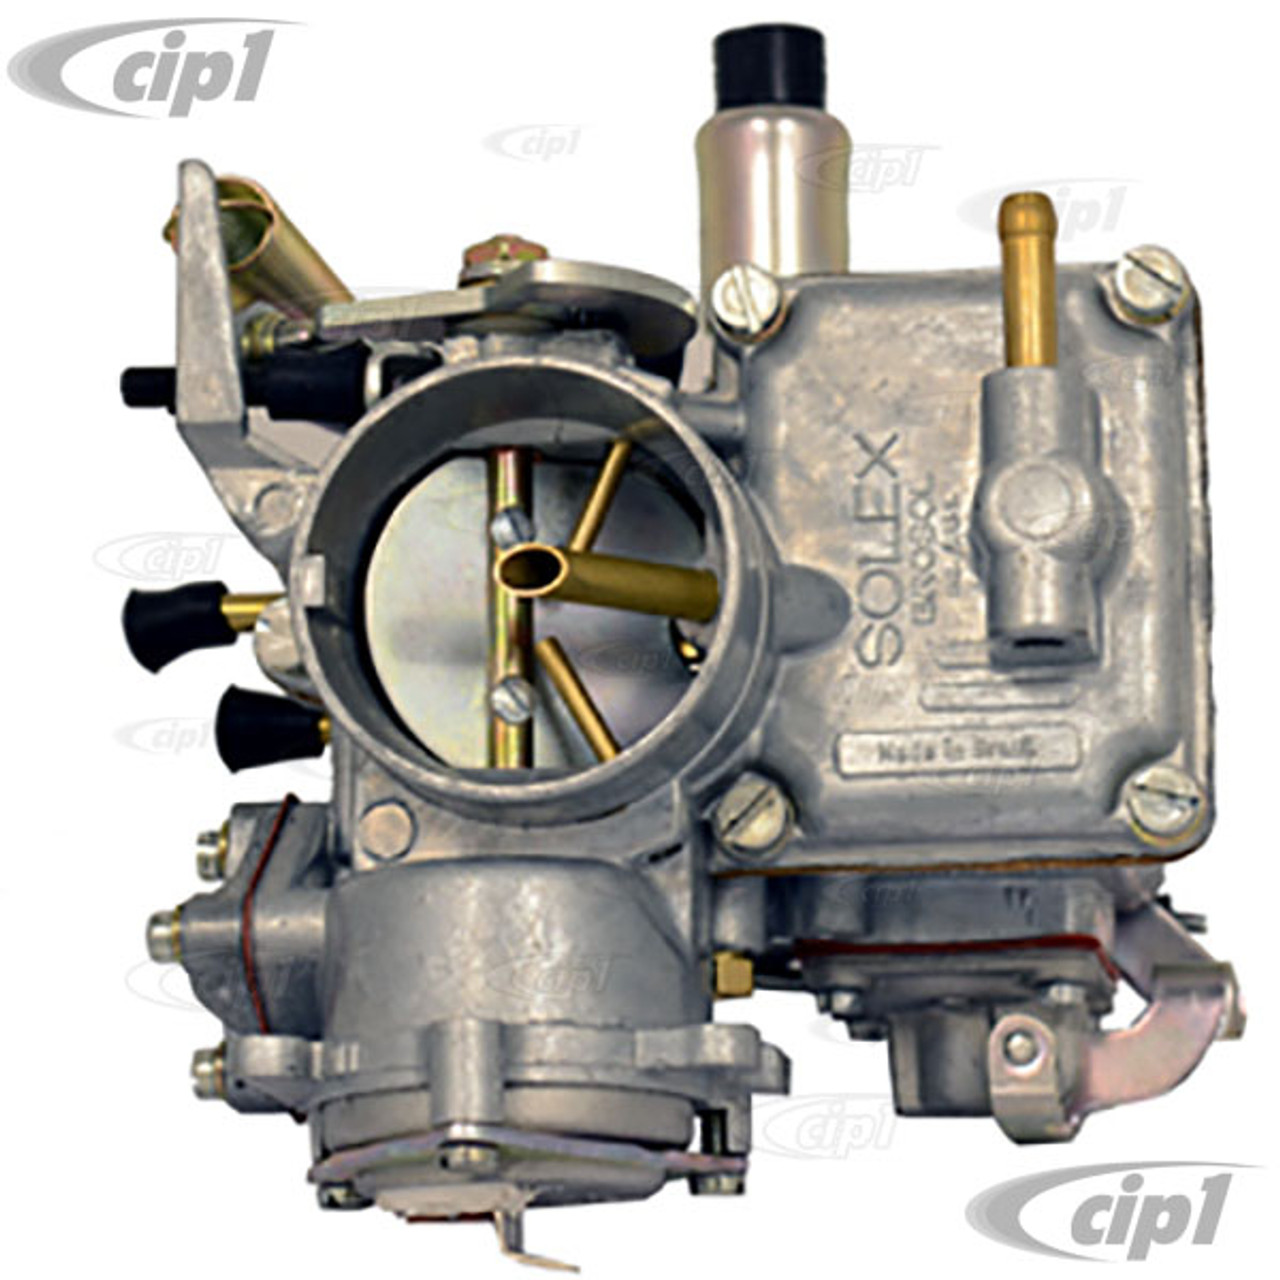 Solex Carburetor, 30/31 PICT, replaces 34 PICT-3#15-0004